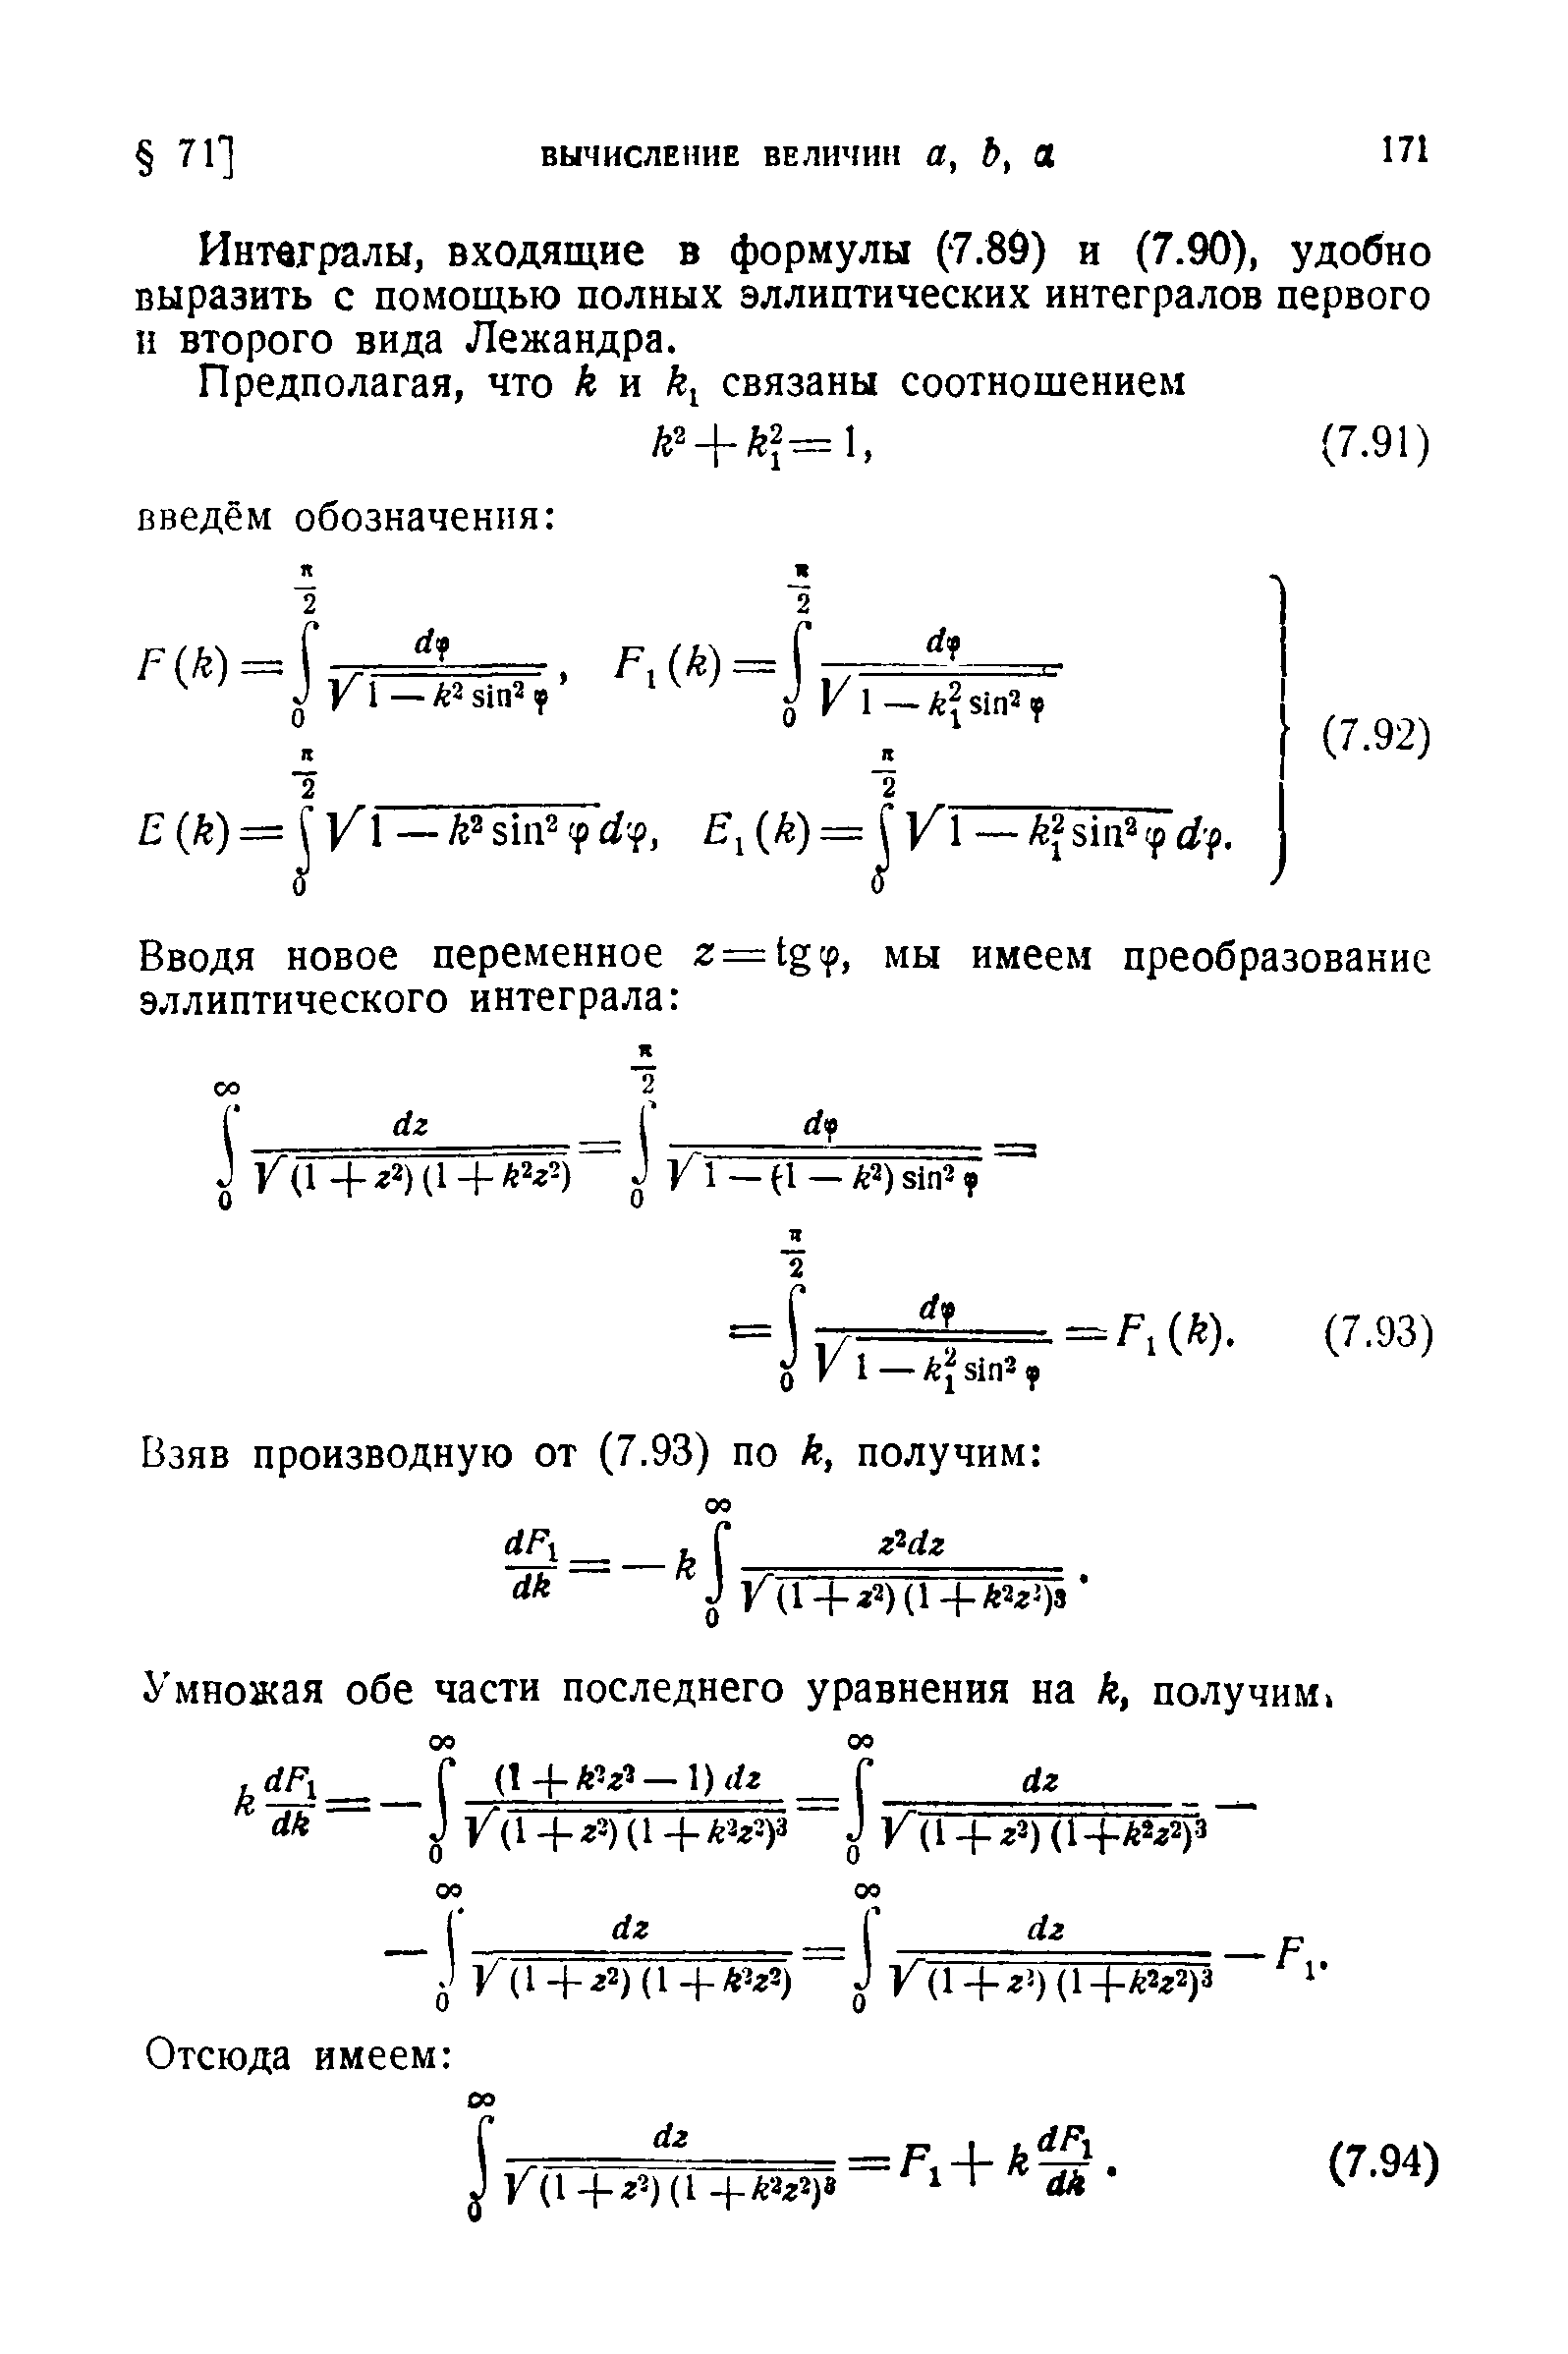 Интегралы, входящие в формулы (7.86) и (7.90), удобно выразить с помощью полных эллиптических интегралов первого н второго вида Лежандра.
